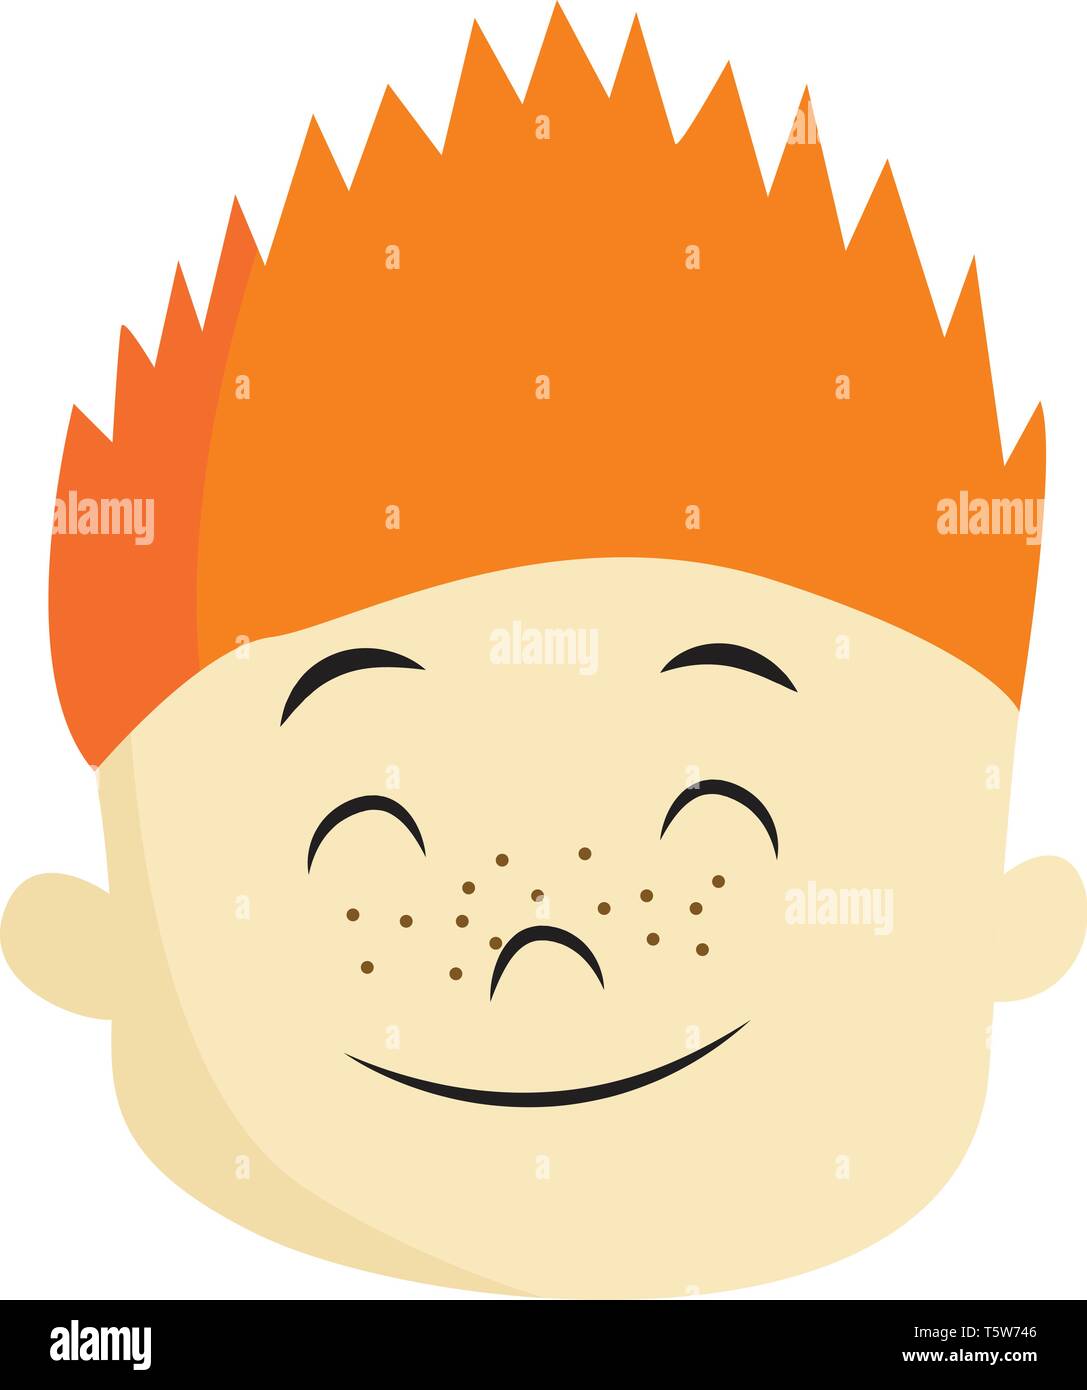 Un ragazzo con orange dentato per capelli e le lentiggini sul volto è chiudendo gli occhi e sorridendo vettore di disegno a colori o illustrazione Illustrazione Vettoriale